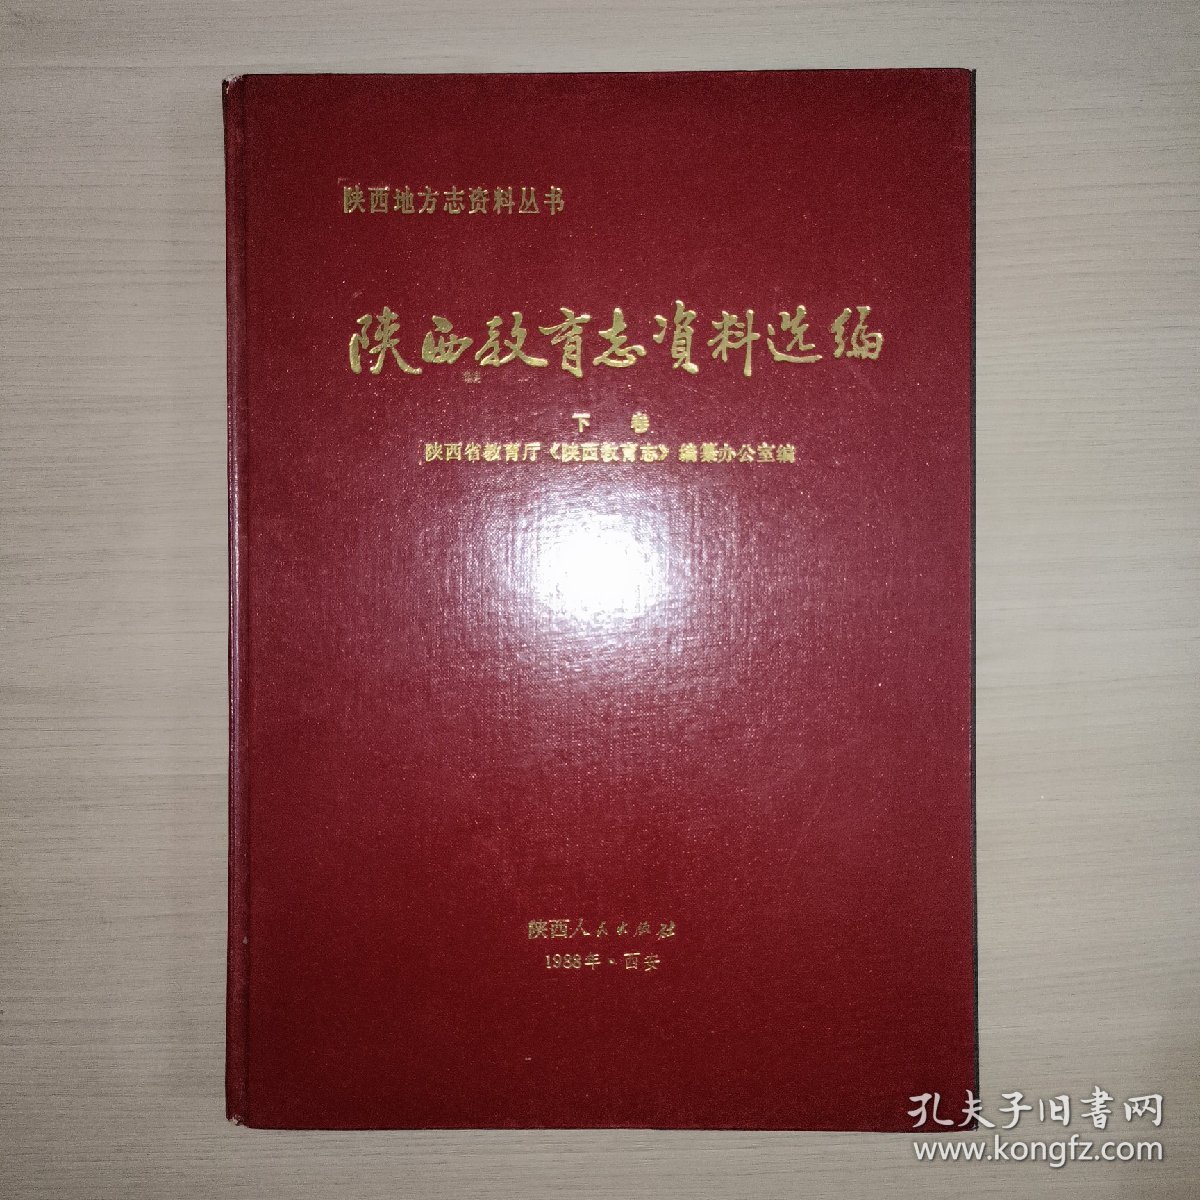 陕西教育志资料选编 第三、四、五、六辑合刊  （下卷）